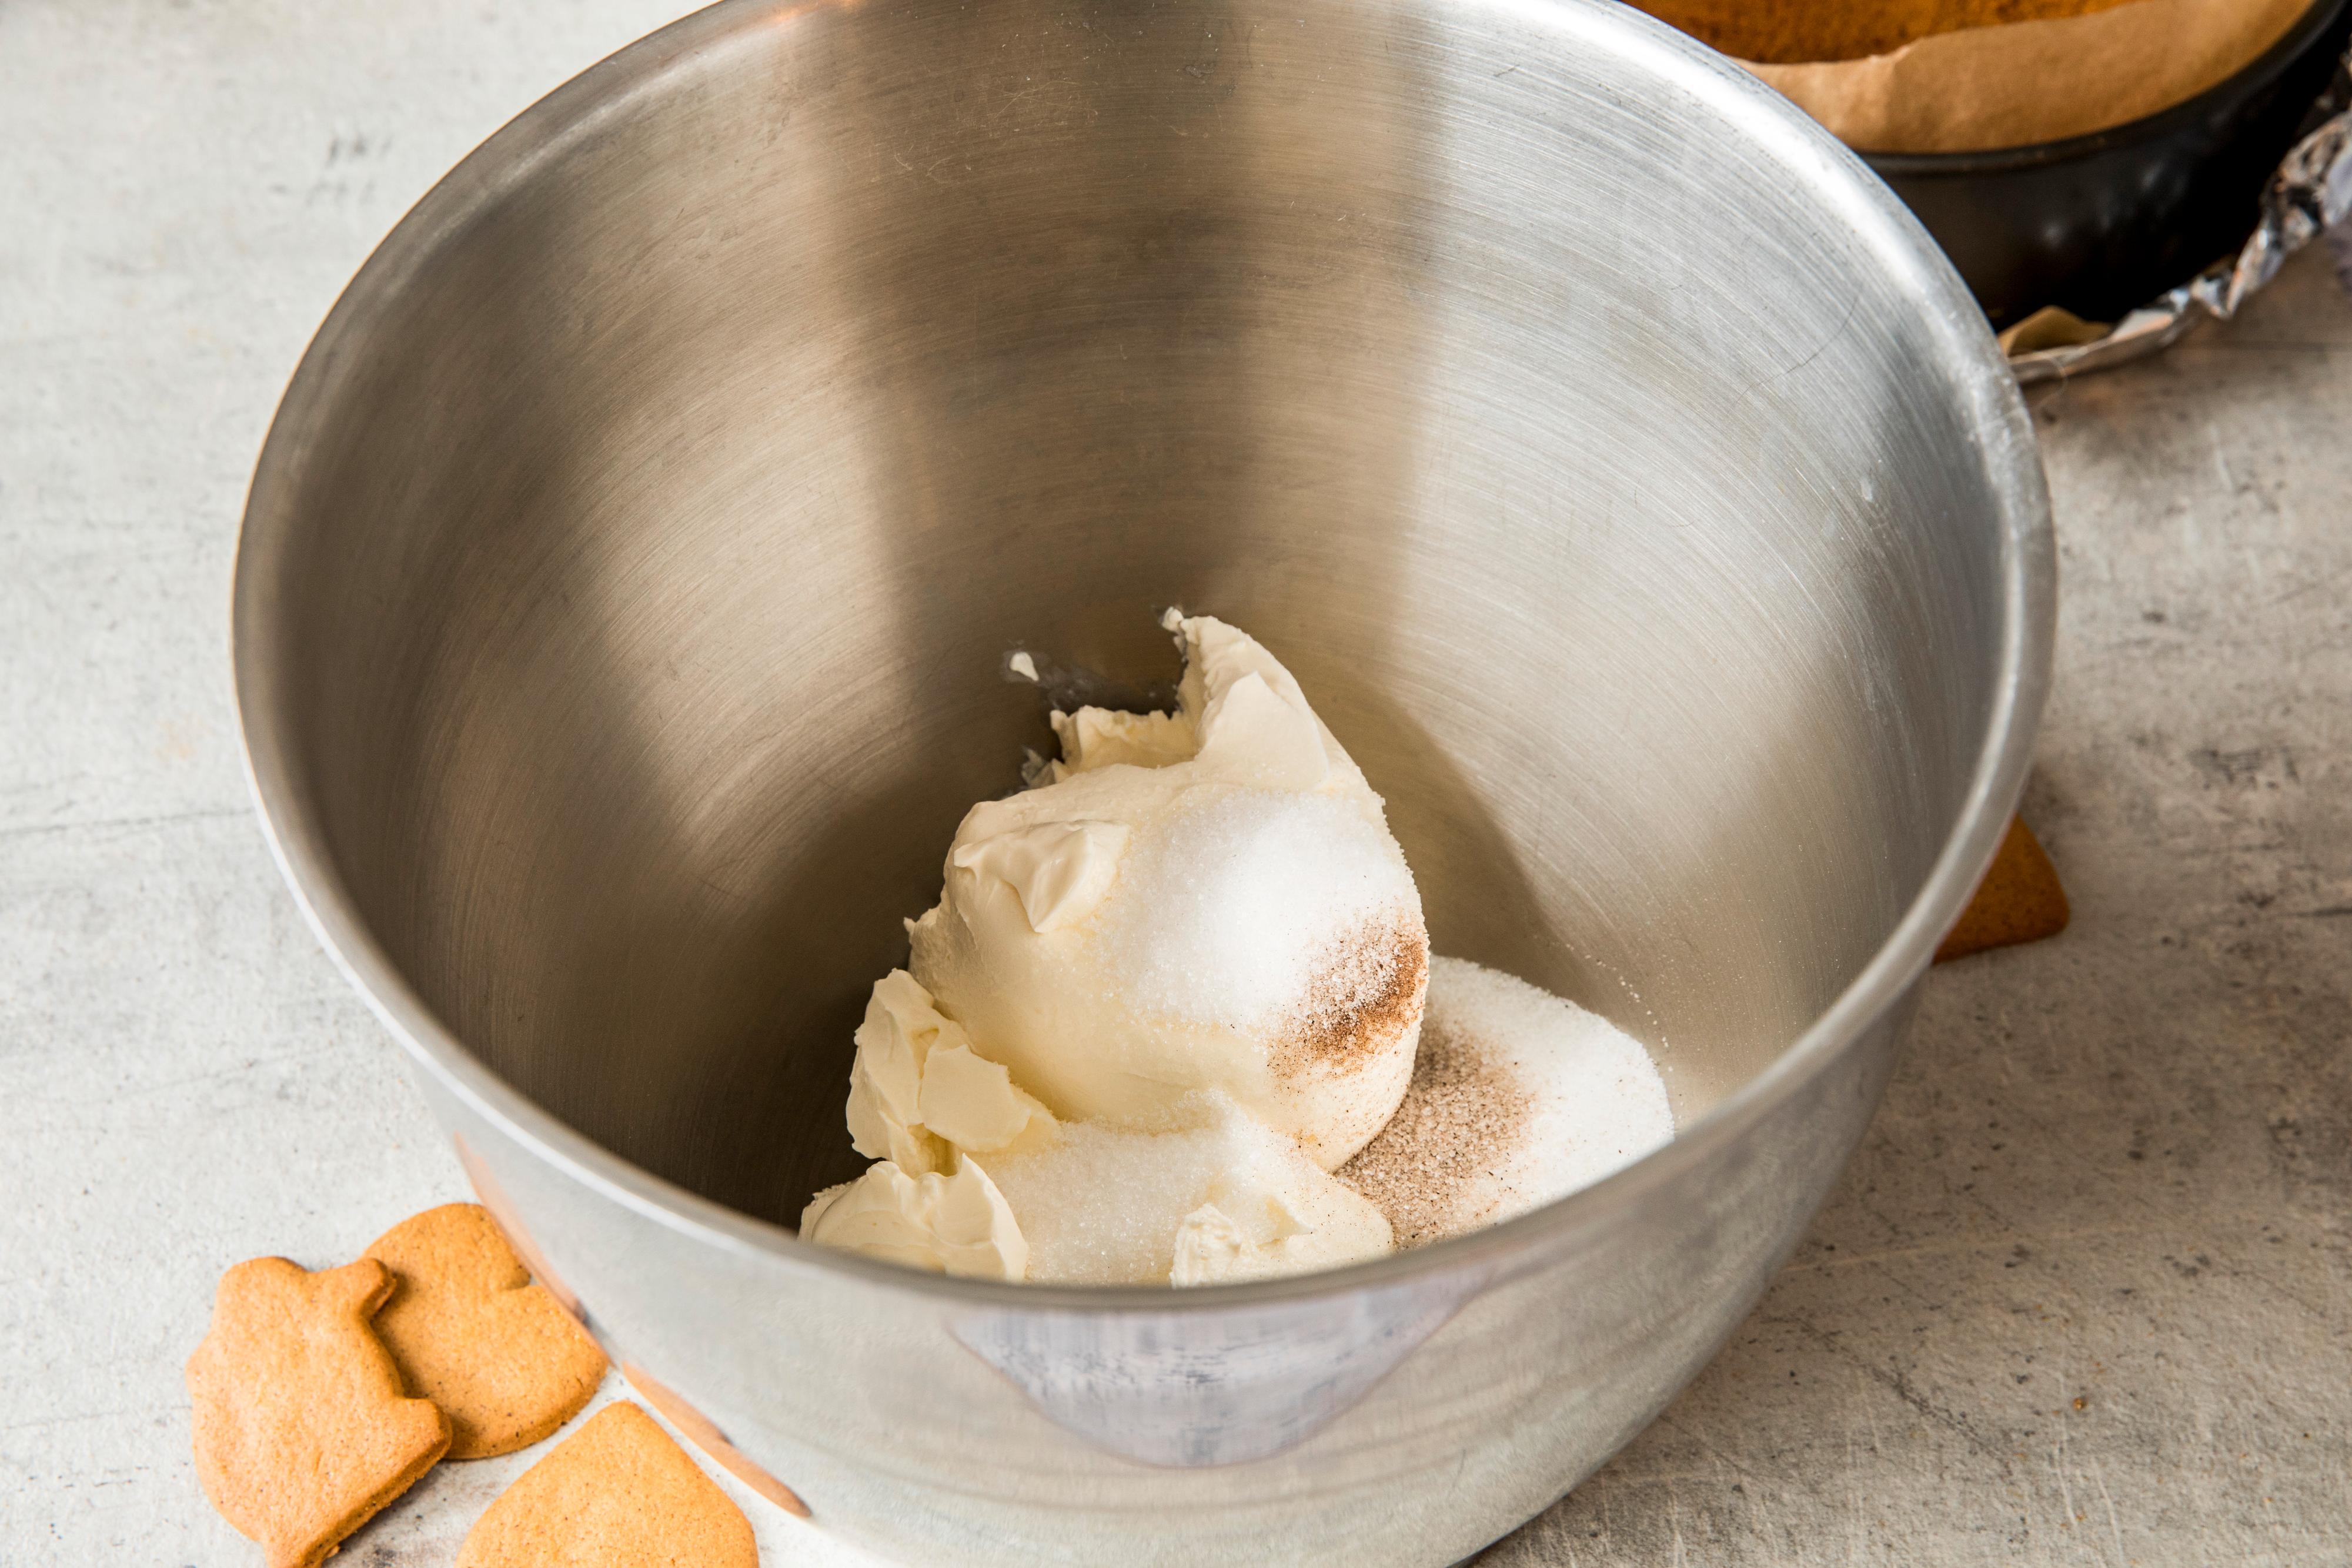 Senk temperaturen på ovnen til 150 grader. Bruk en kjøkkenmaskin og rør ost, sukker og vanilje glatt og kremet ved lav hastighet. Stopp maskinen og skrap ned langs med sidene et par ganger underveis.